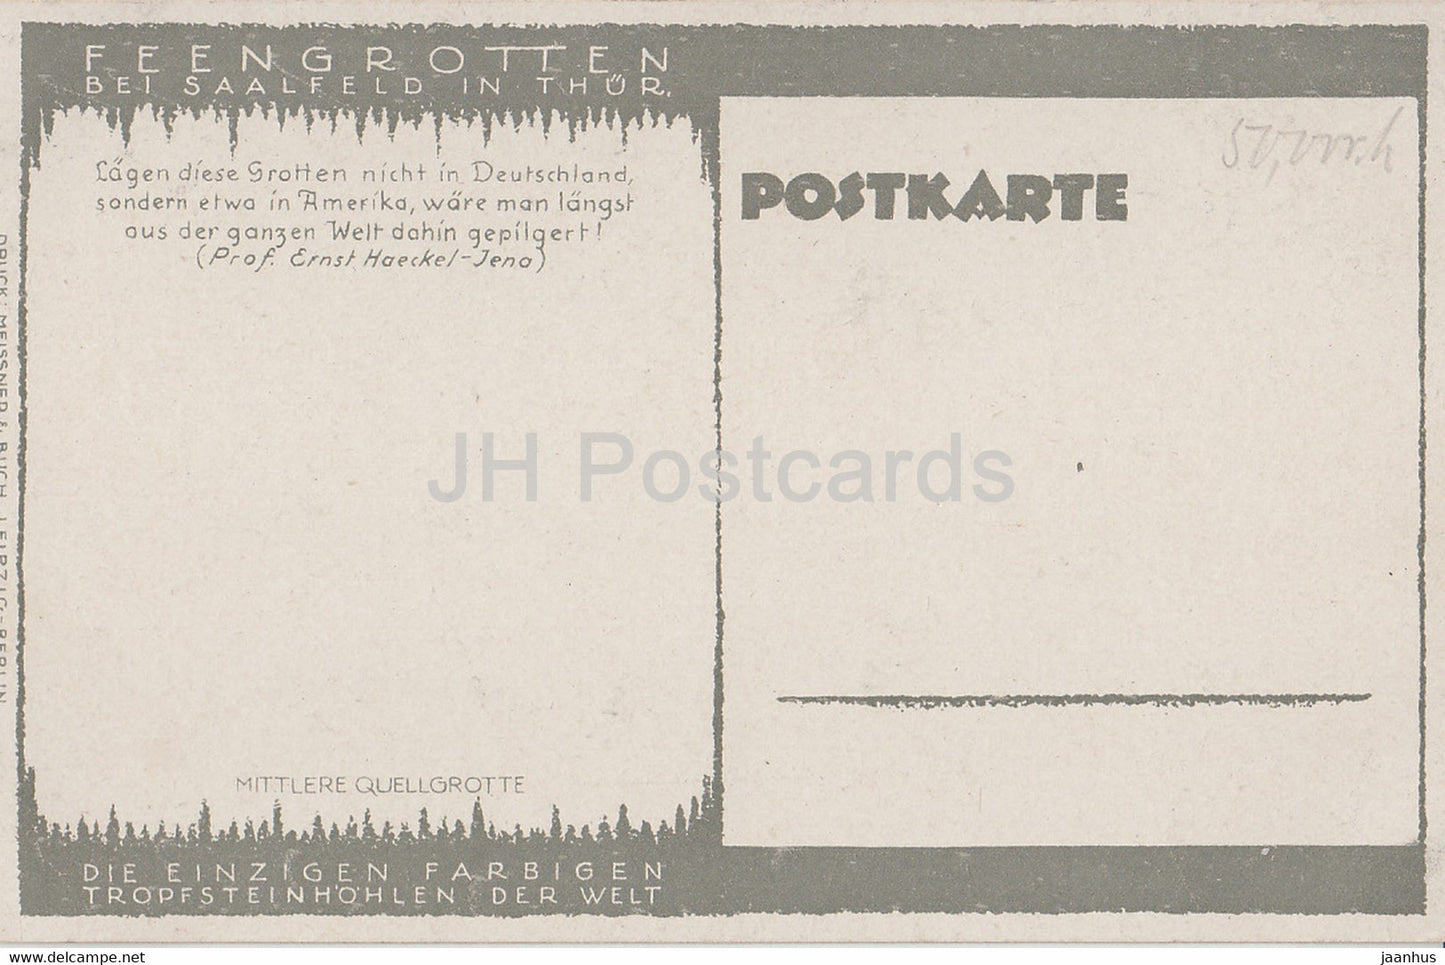 Feengrotten bei Saalfeld in Thur - Mittlere Quellgrotte - Höhle - alte Postkarte - Deutschland - unbenutzt